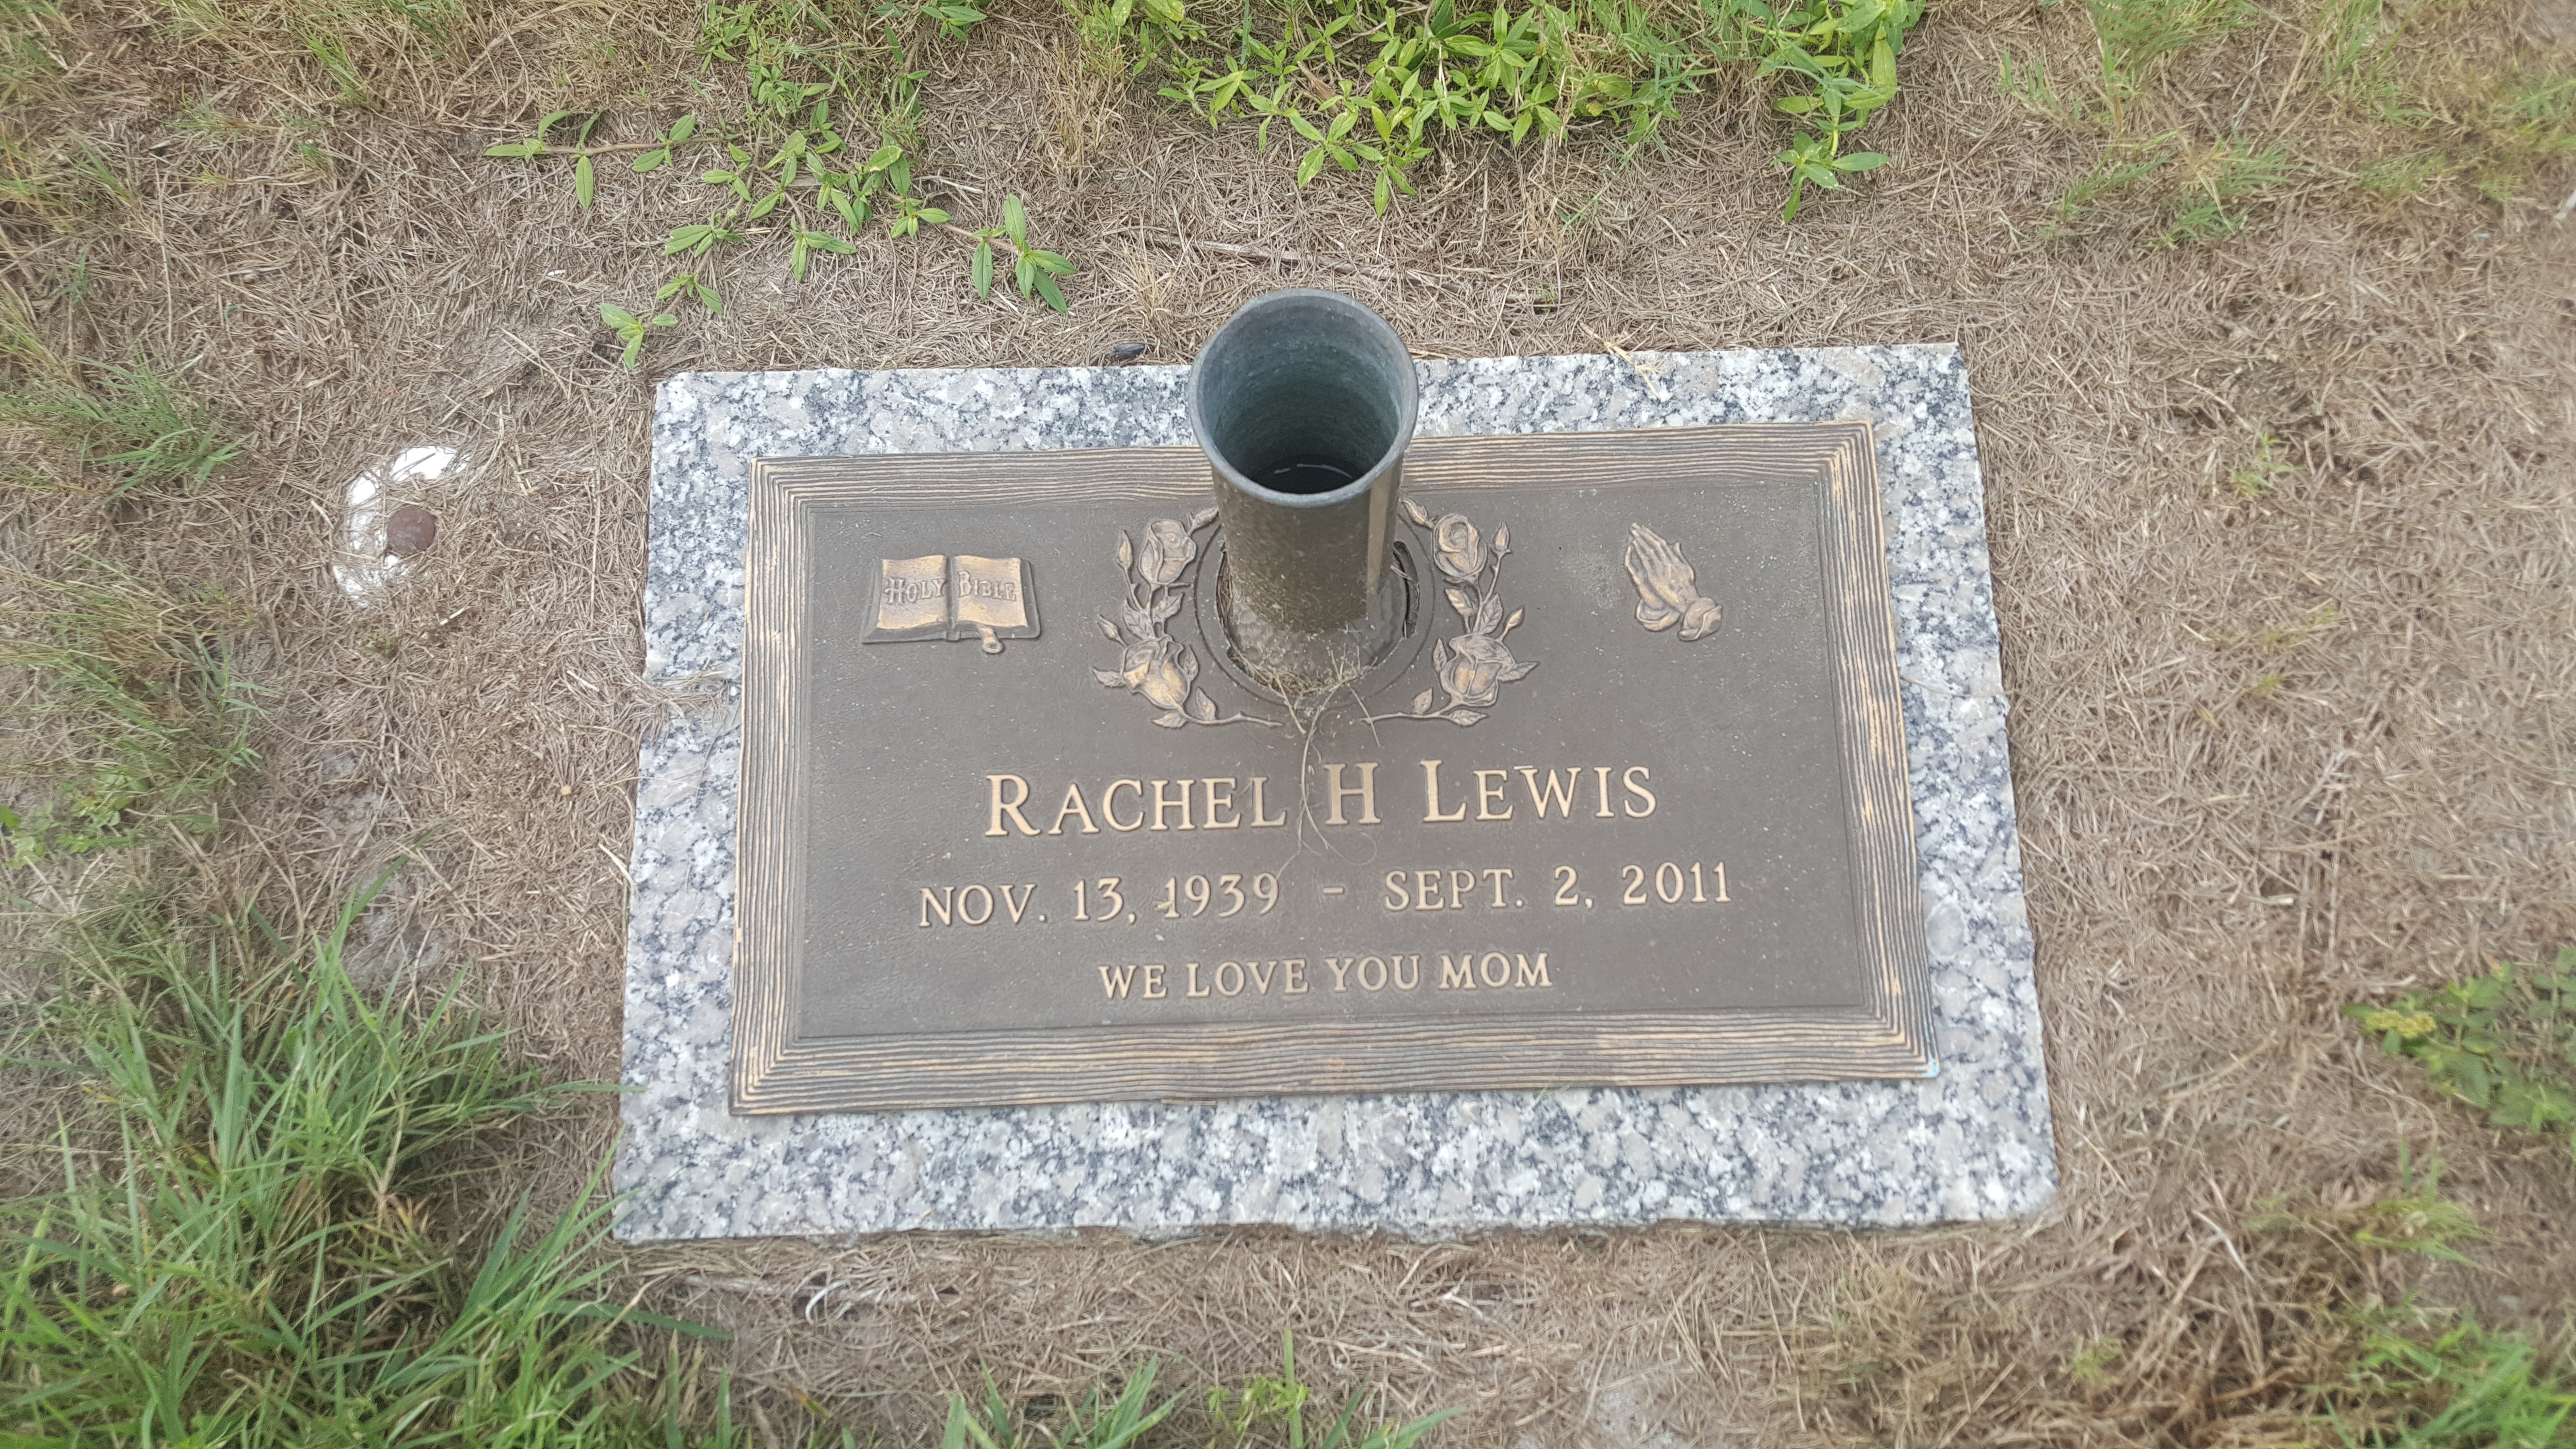 Rachel H Lewis